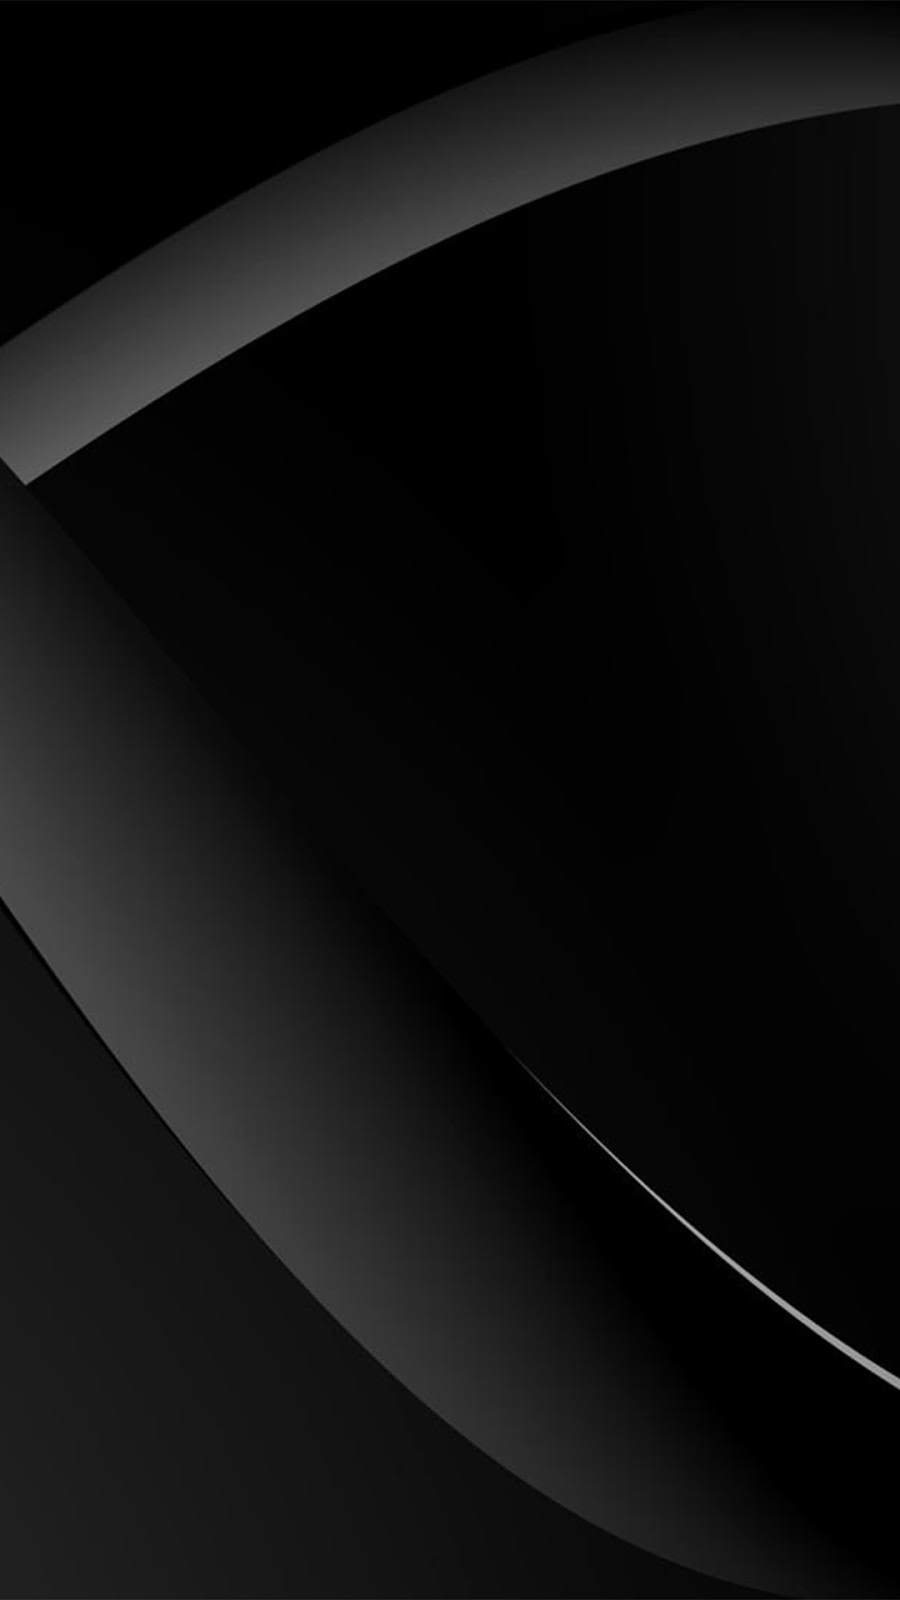 Blackberry Themes Nokia Lumia Wallpaper Black